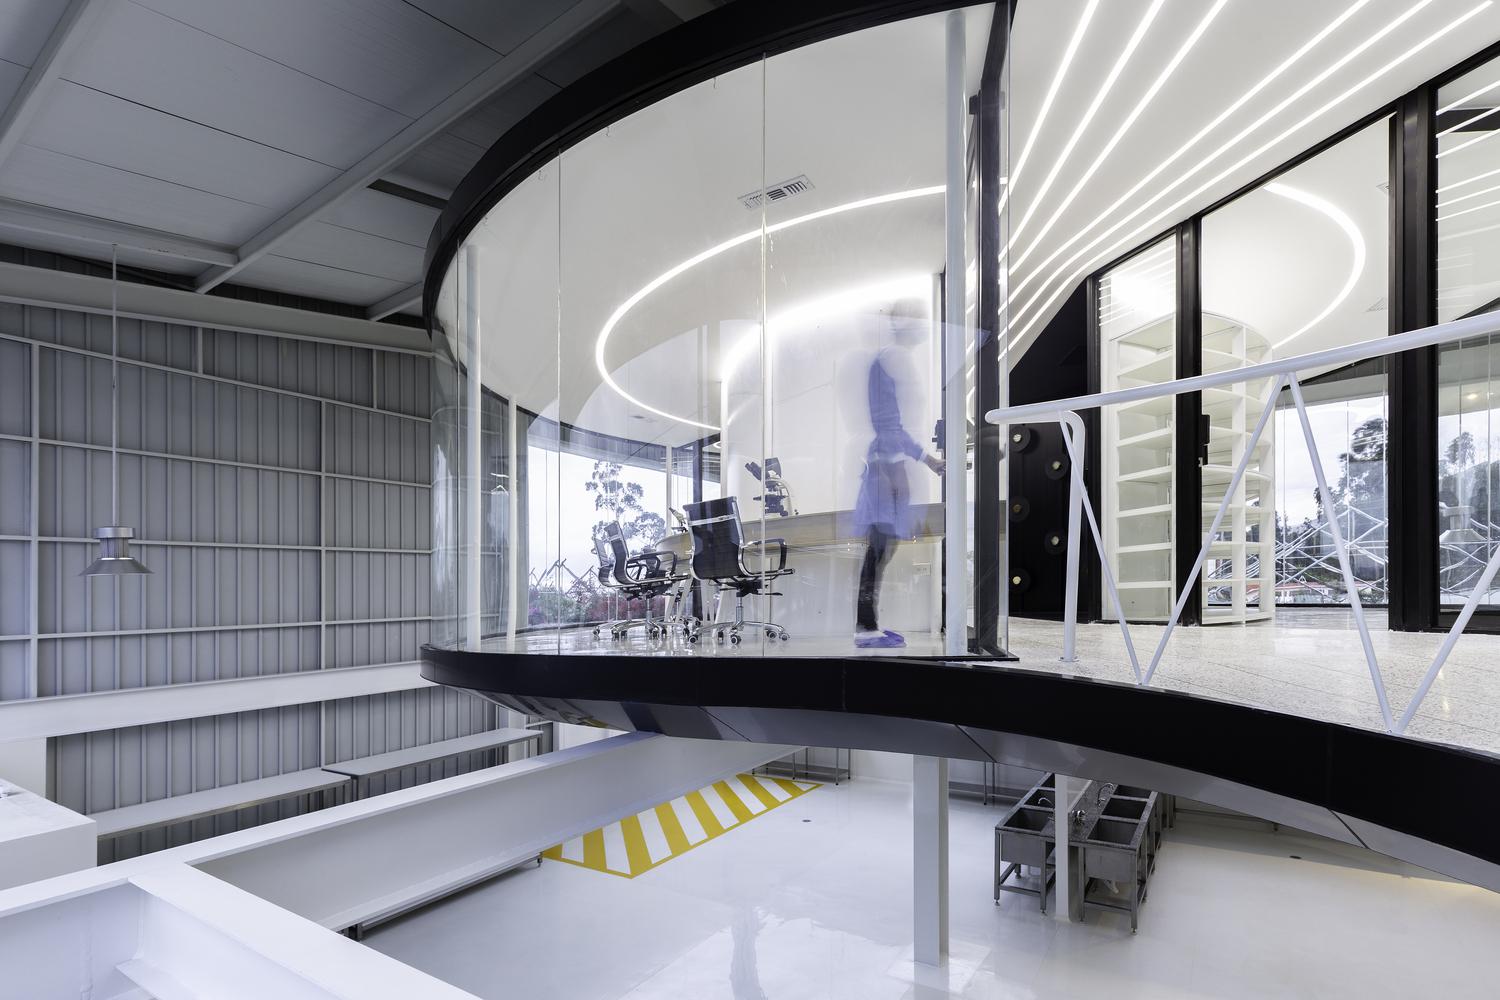 【猶如置身於科幻電影】 厄瓜多爾創新實驗室 以未來風格帶來靈感